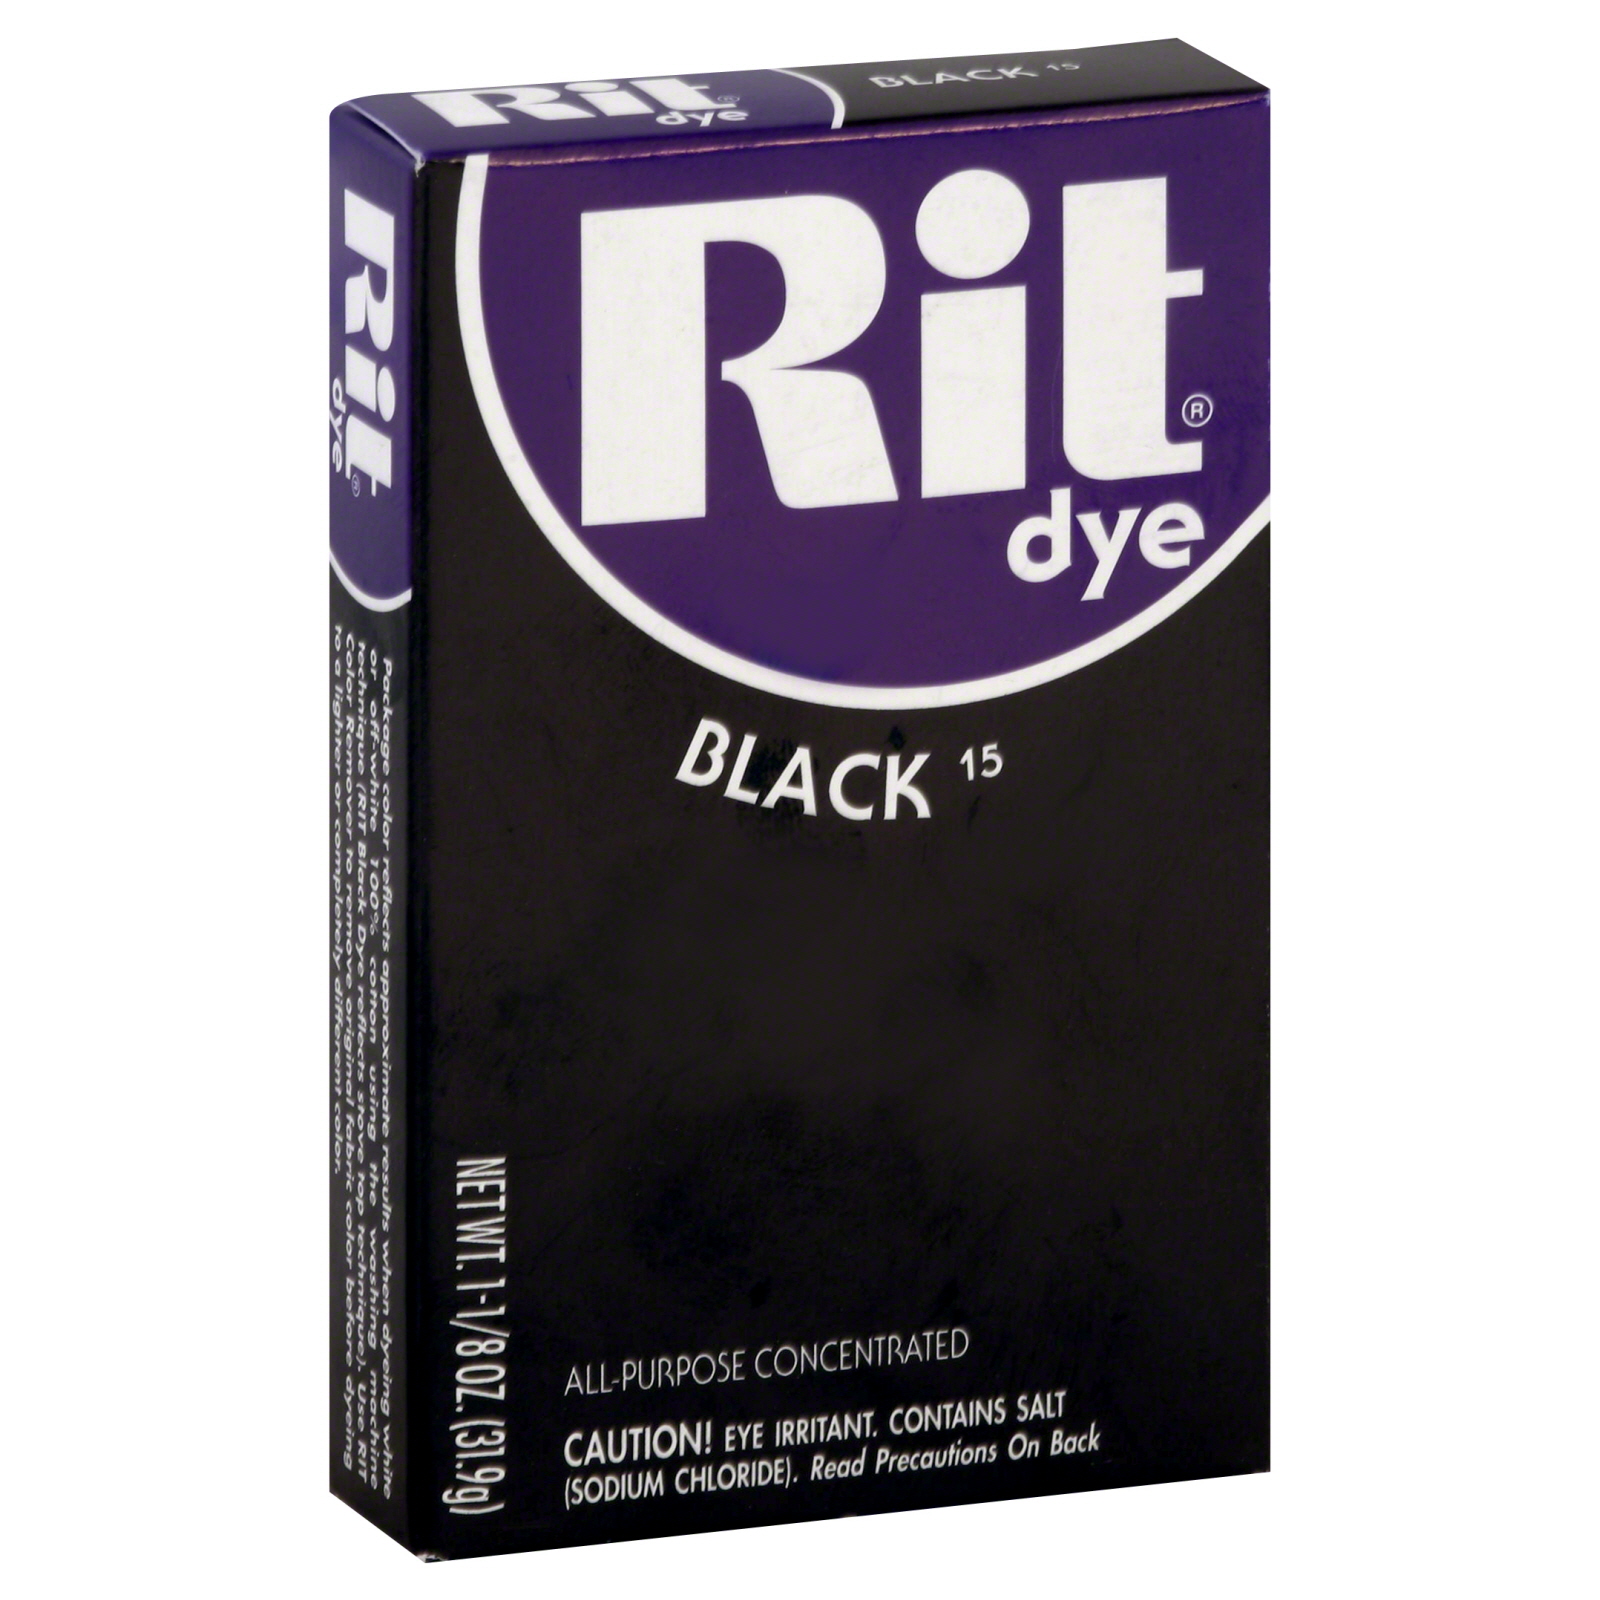 Rit Fabric Dye, Black 15, 1.125 oz (31.9 g)